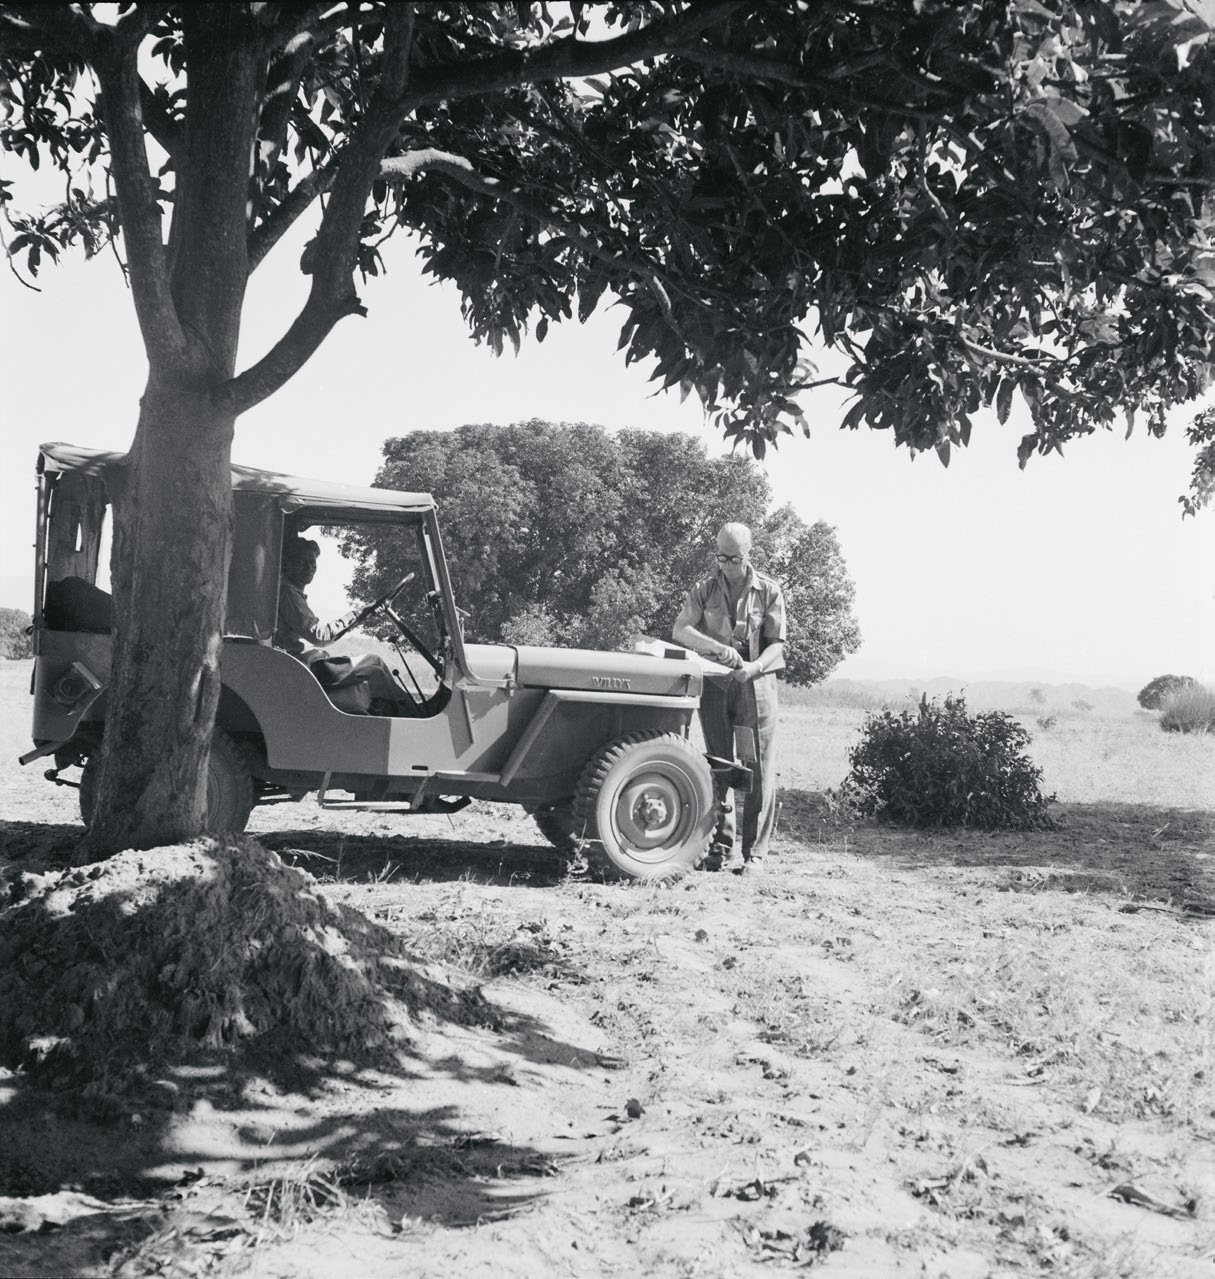 Le Corbusier studiert eine Karte auf der Motorhaube eines Jeeps